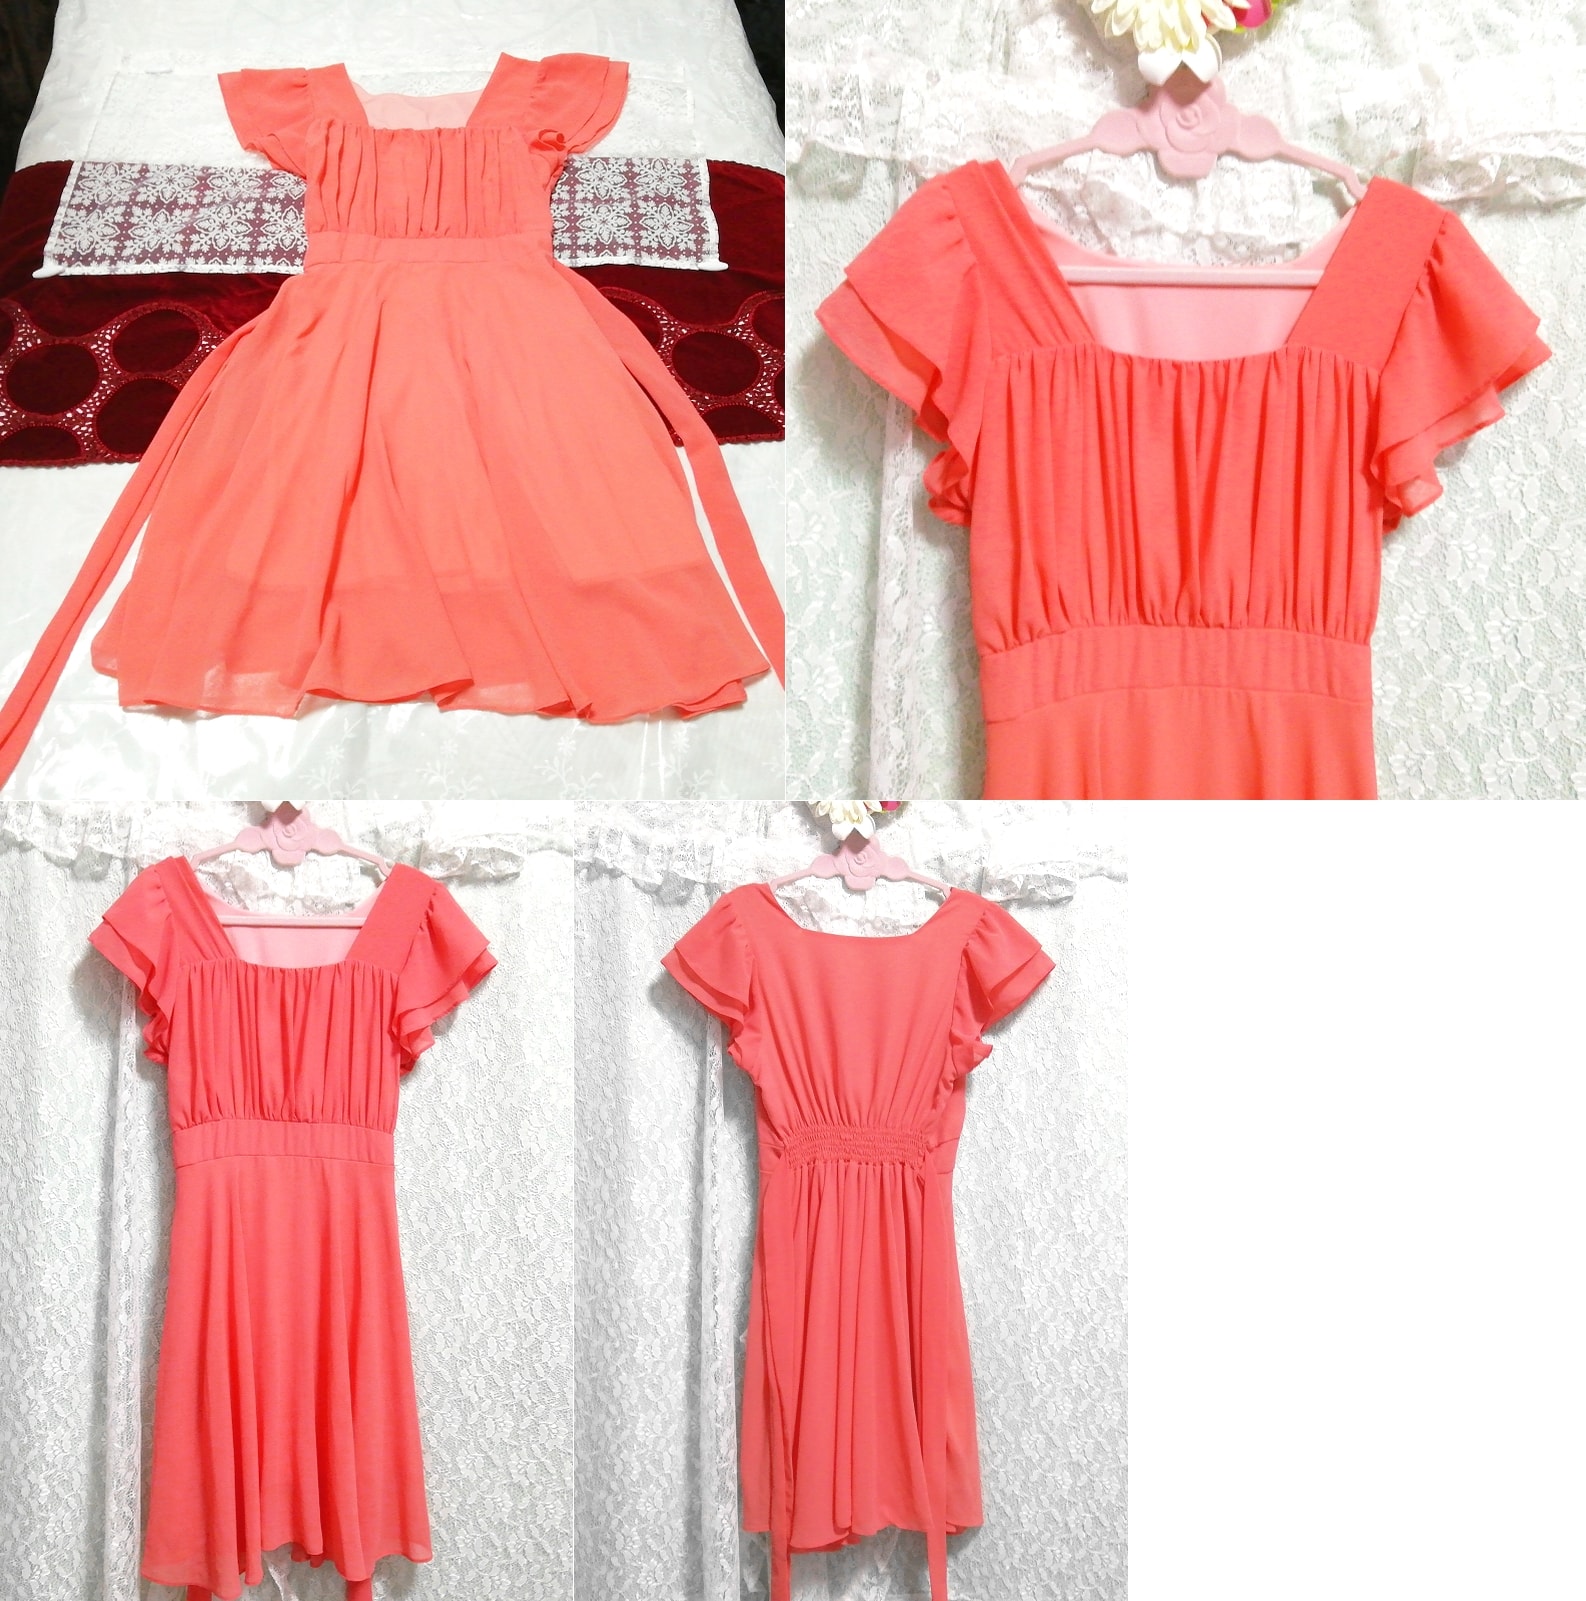 Salmon pink chiffon negligee nightgown tunic dress, knee length skirt, m size